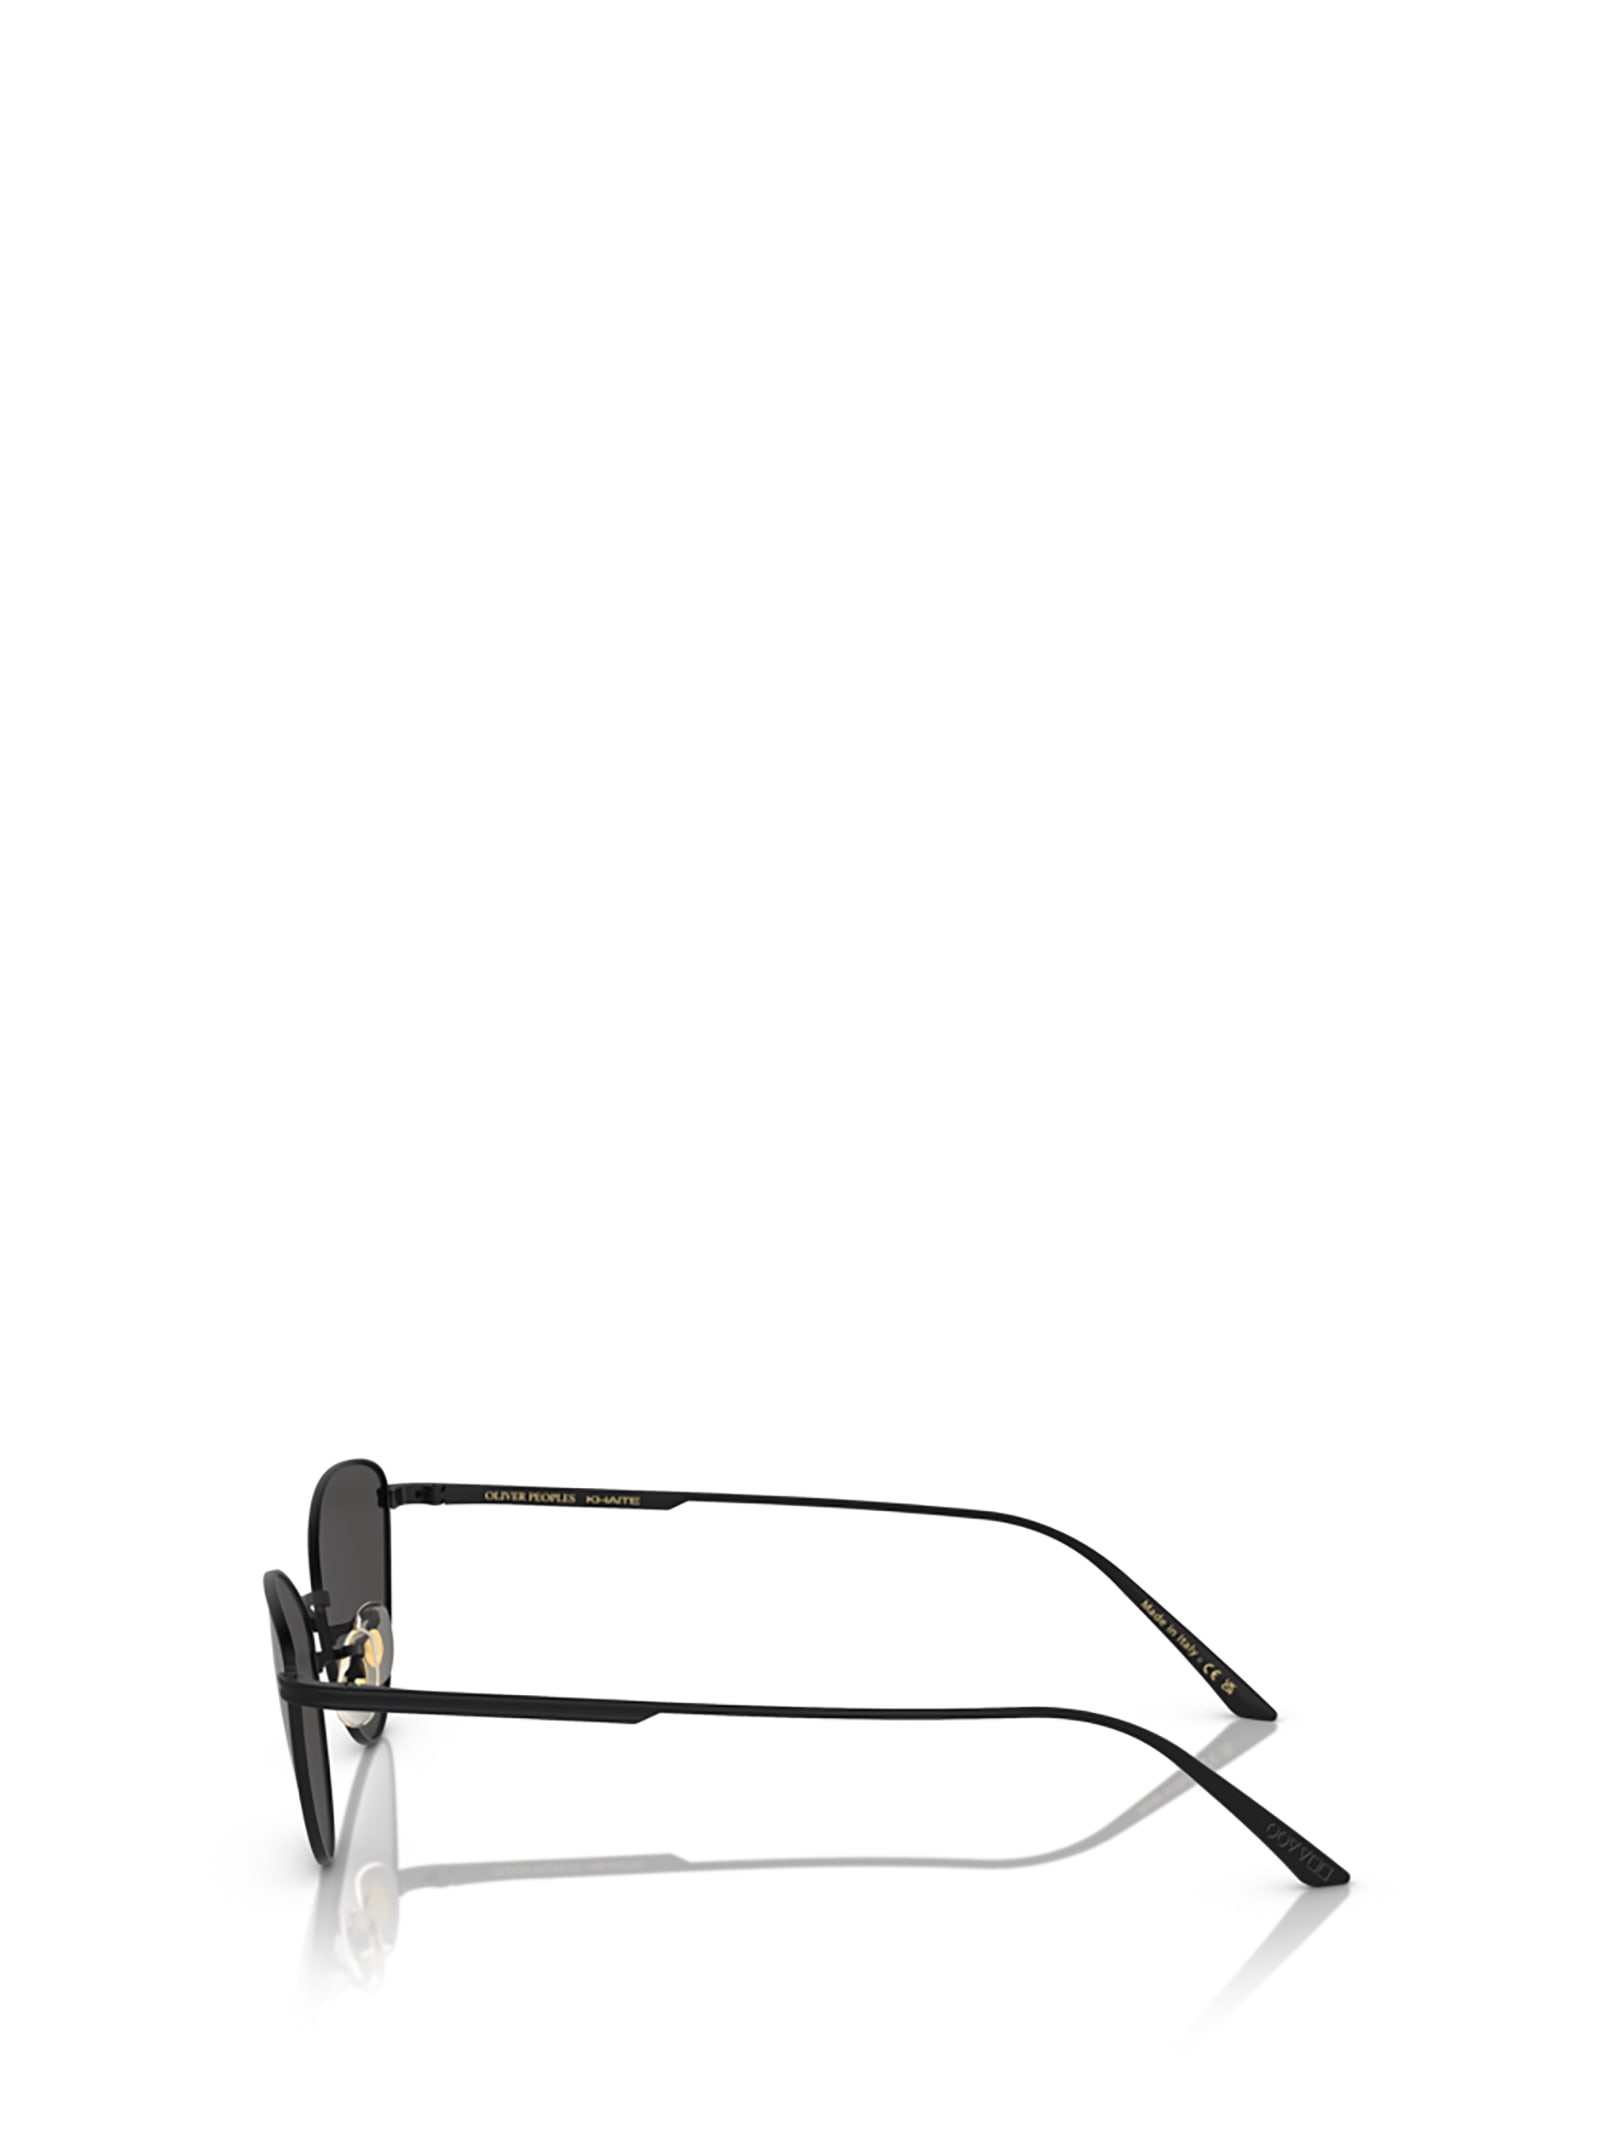 Shop Oliver Peoples Ov1328s Matte Black Sunglasses